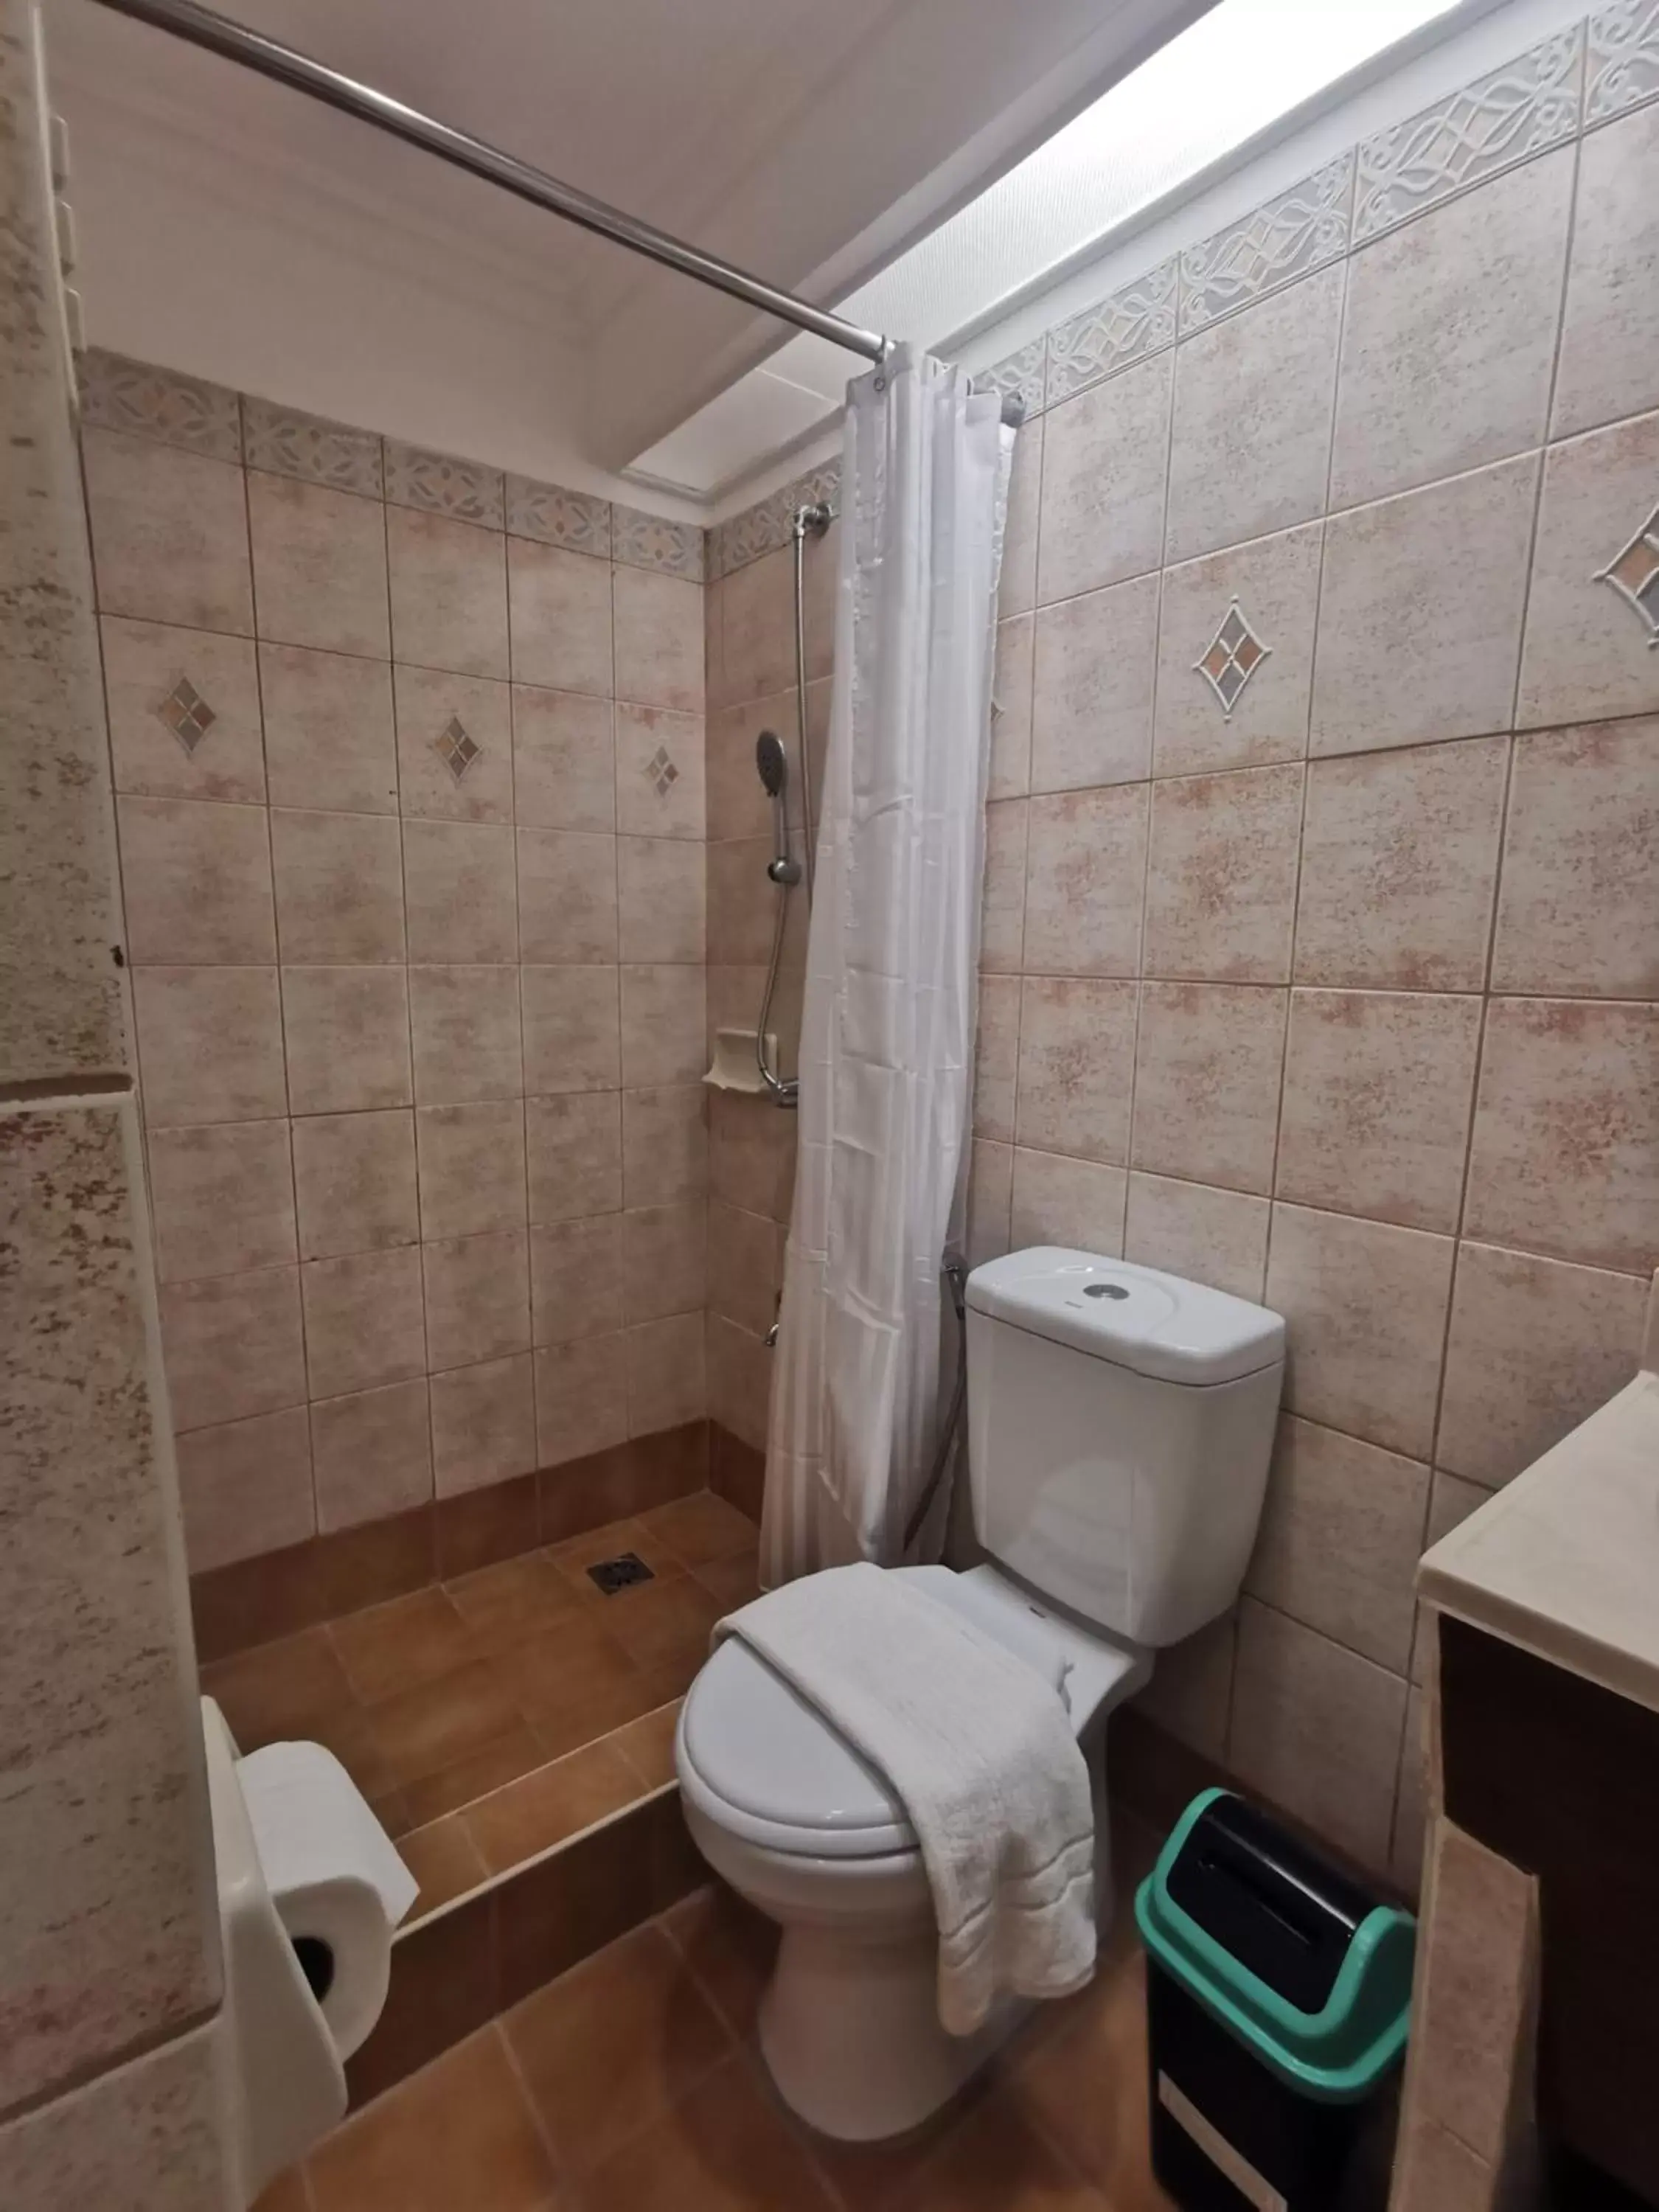 Shower, Bathroom in Tagaytay Country Hotel